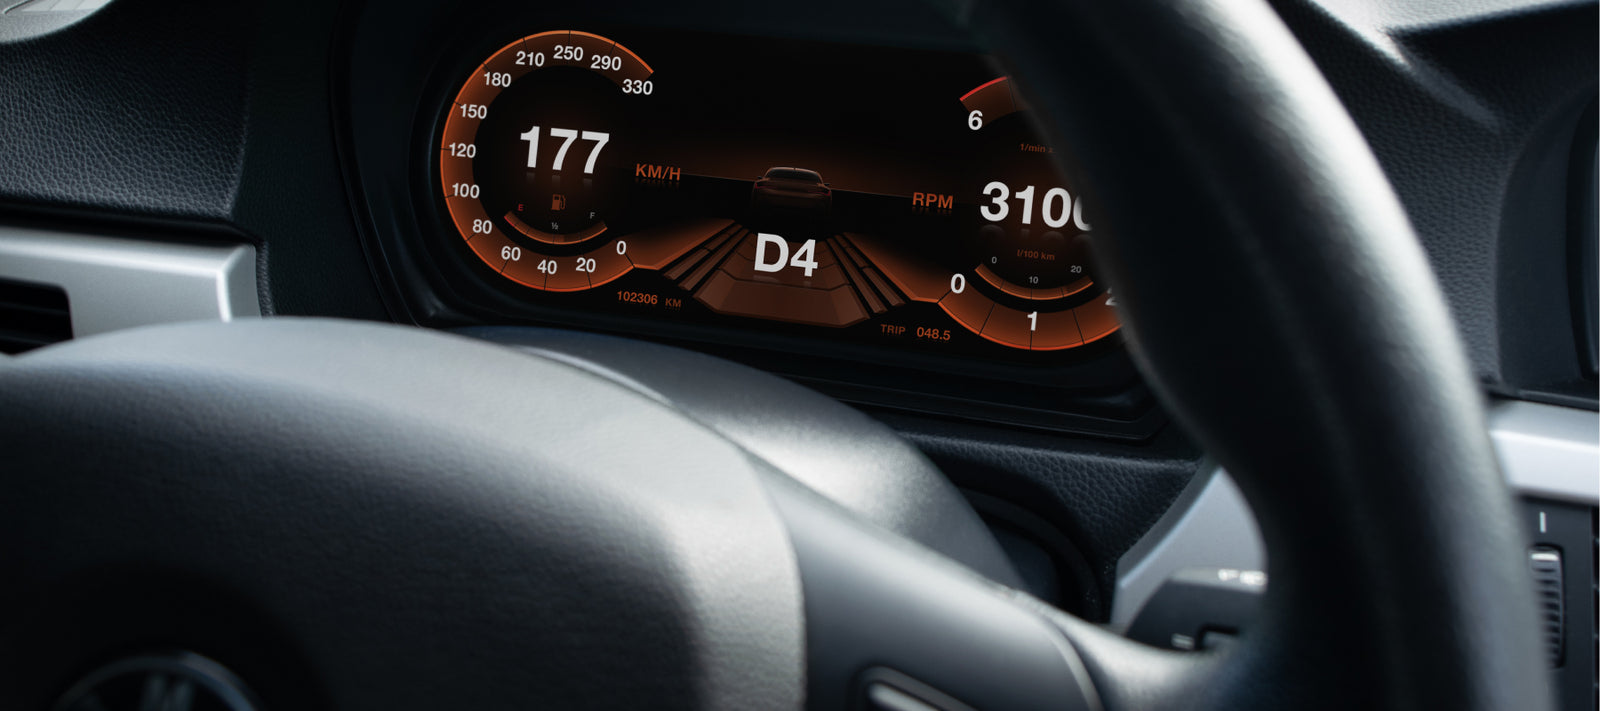 Digital Cluster for BMW 3 Series E90, E91, E92 and E93 - ID4Motion